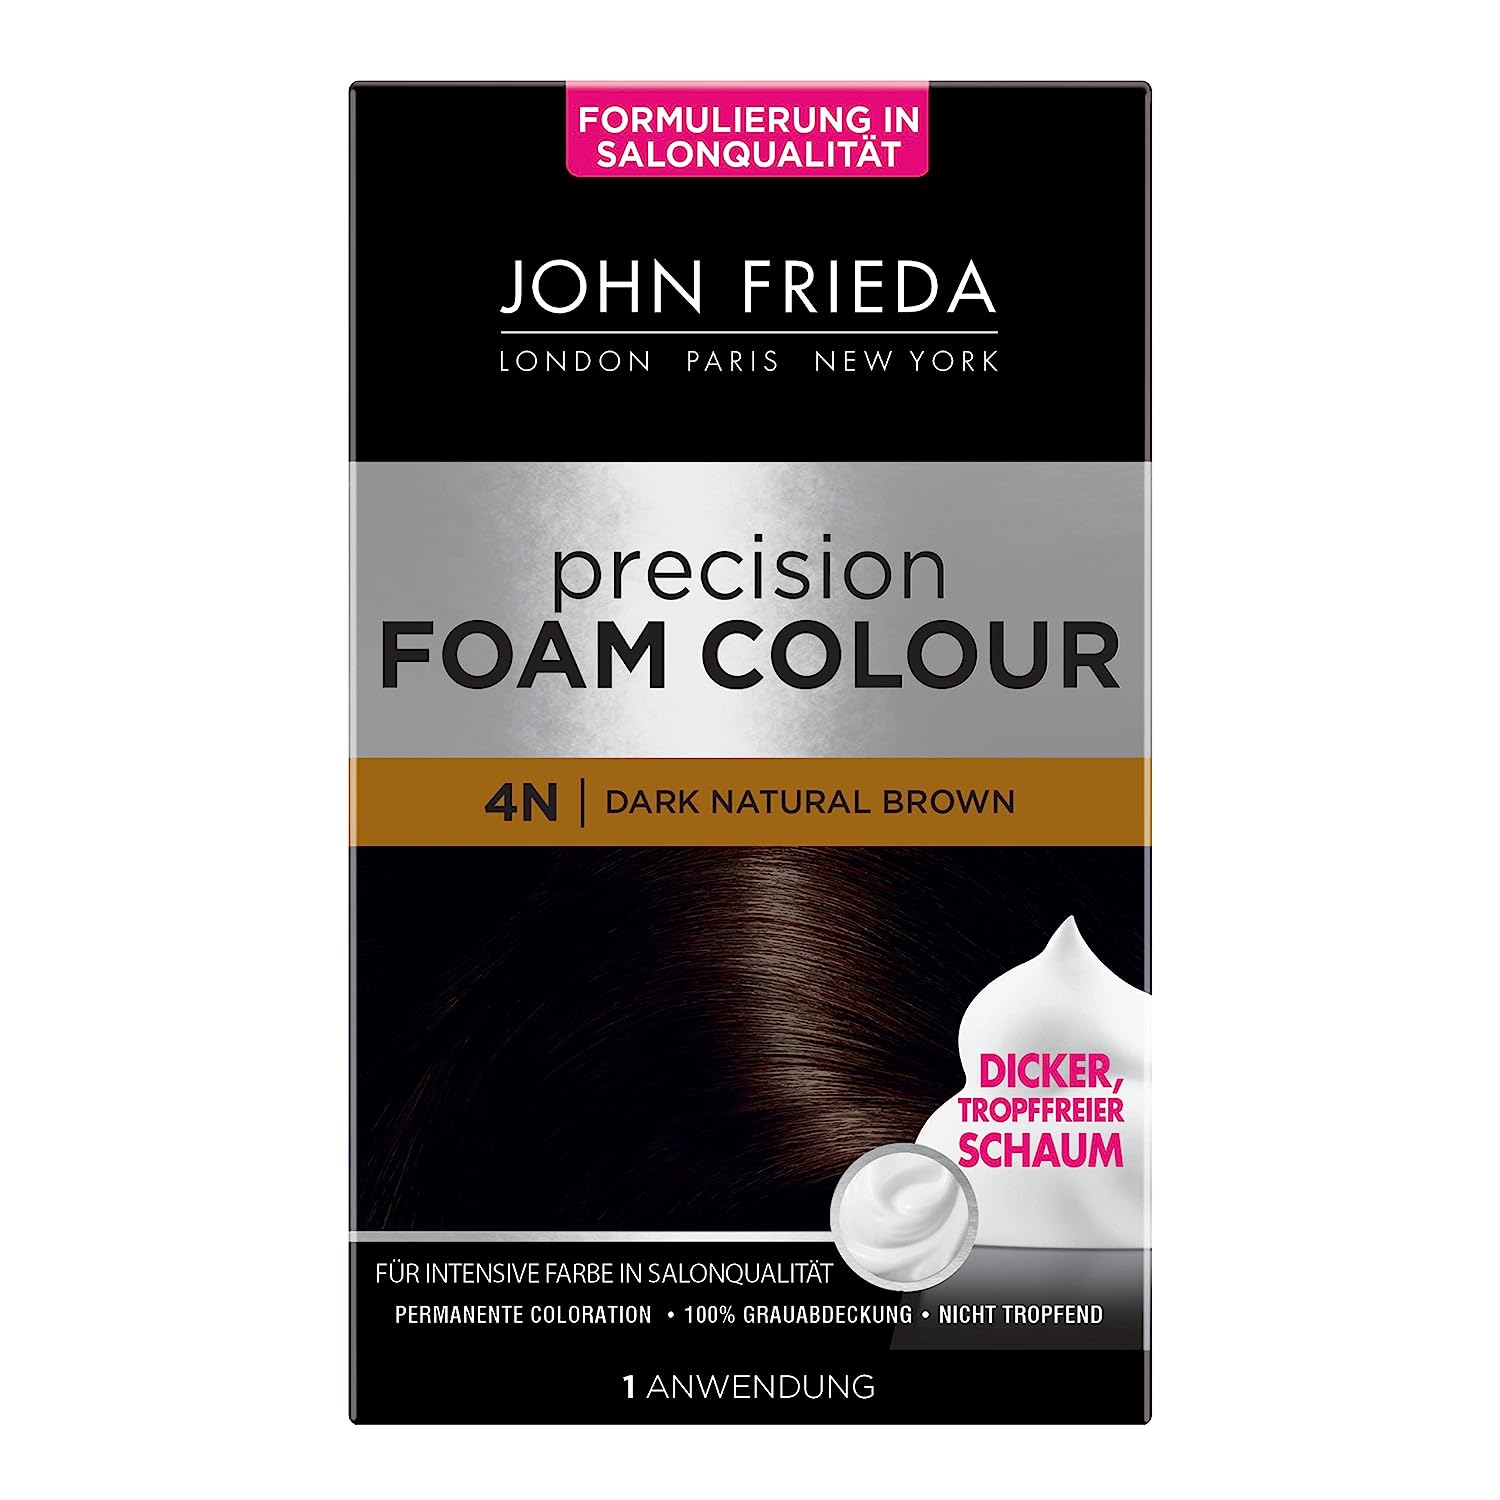 John Frieda Precision Foam Colour - Colour: 4N Dark Natural Brown